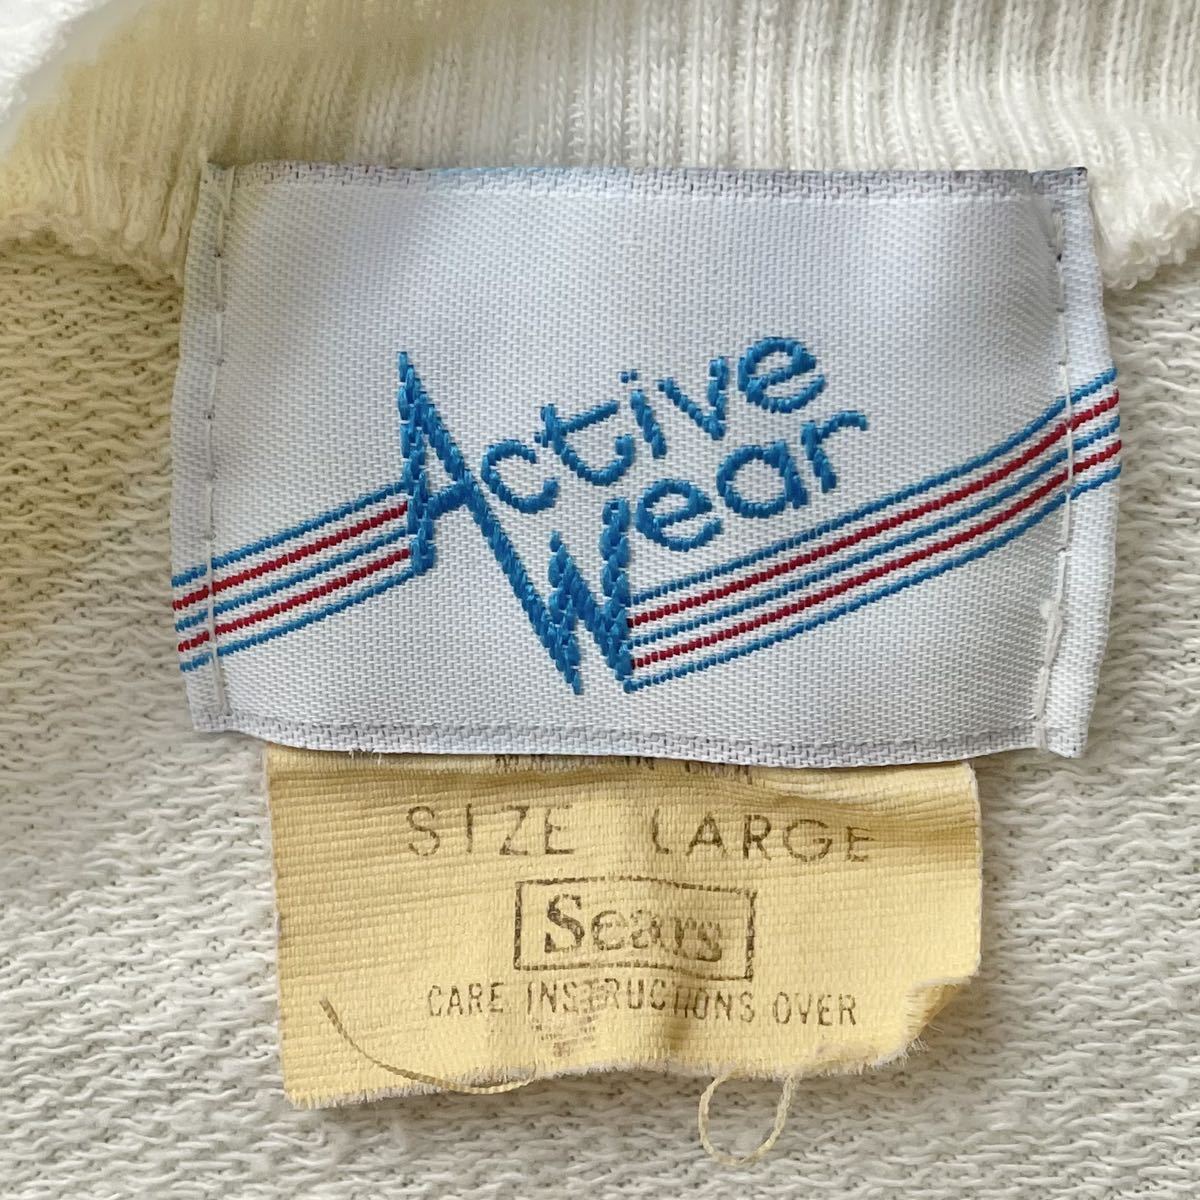 Sears active wear アイボリー ポケット付き スウェット トレーナー 70s 80s vintage